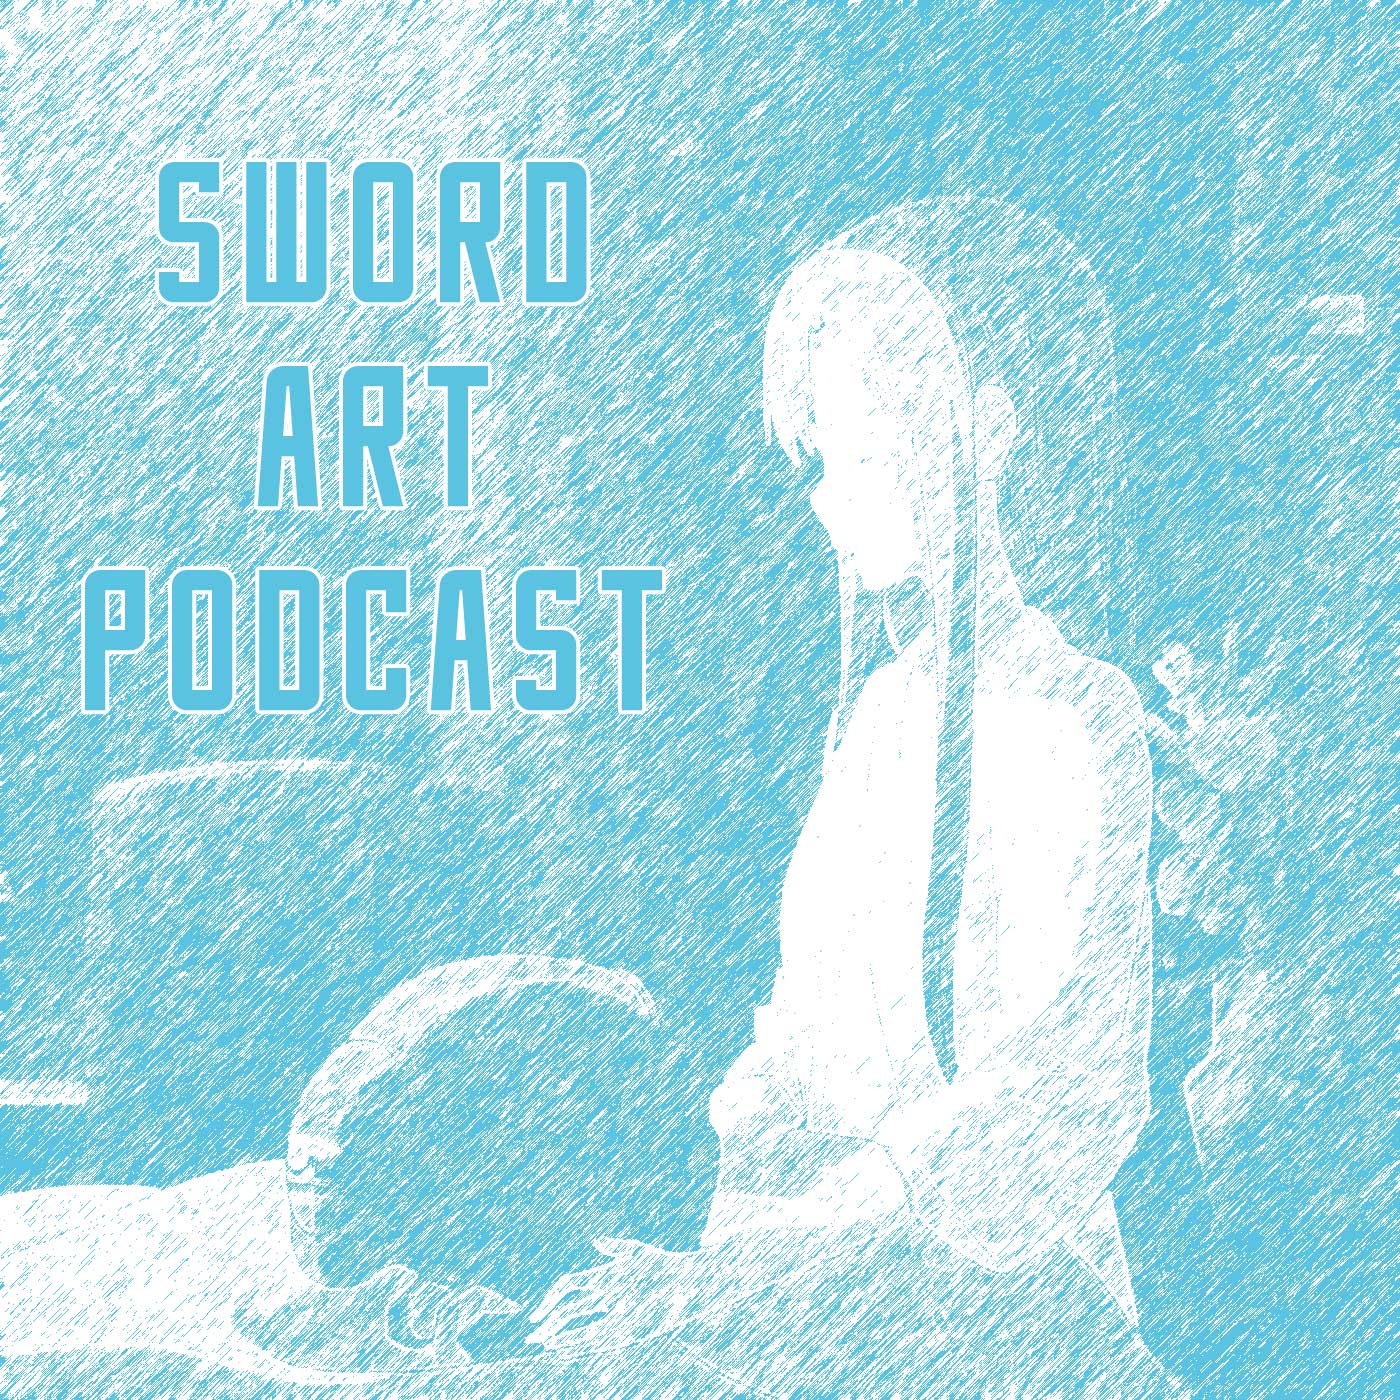 Sword Art Podcast - Season 1.5 - Epsiode 2